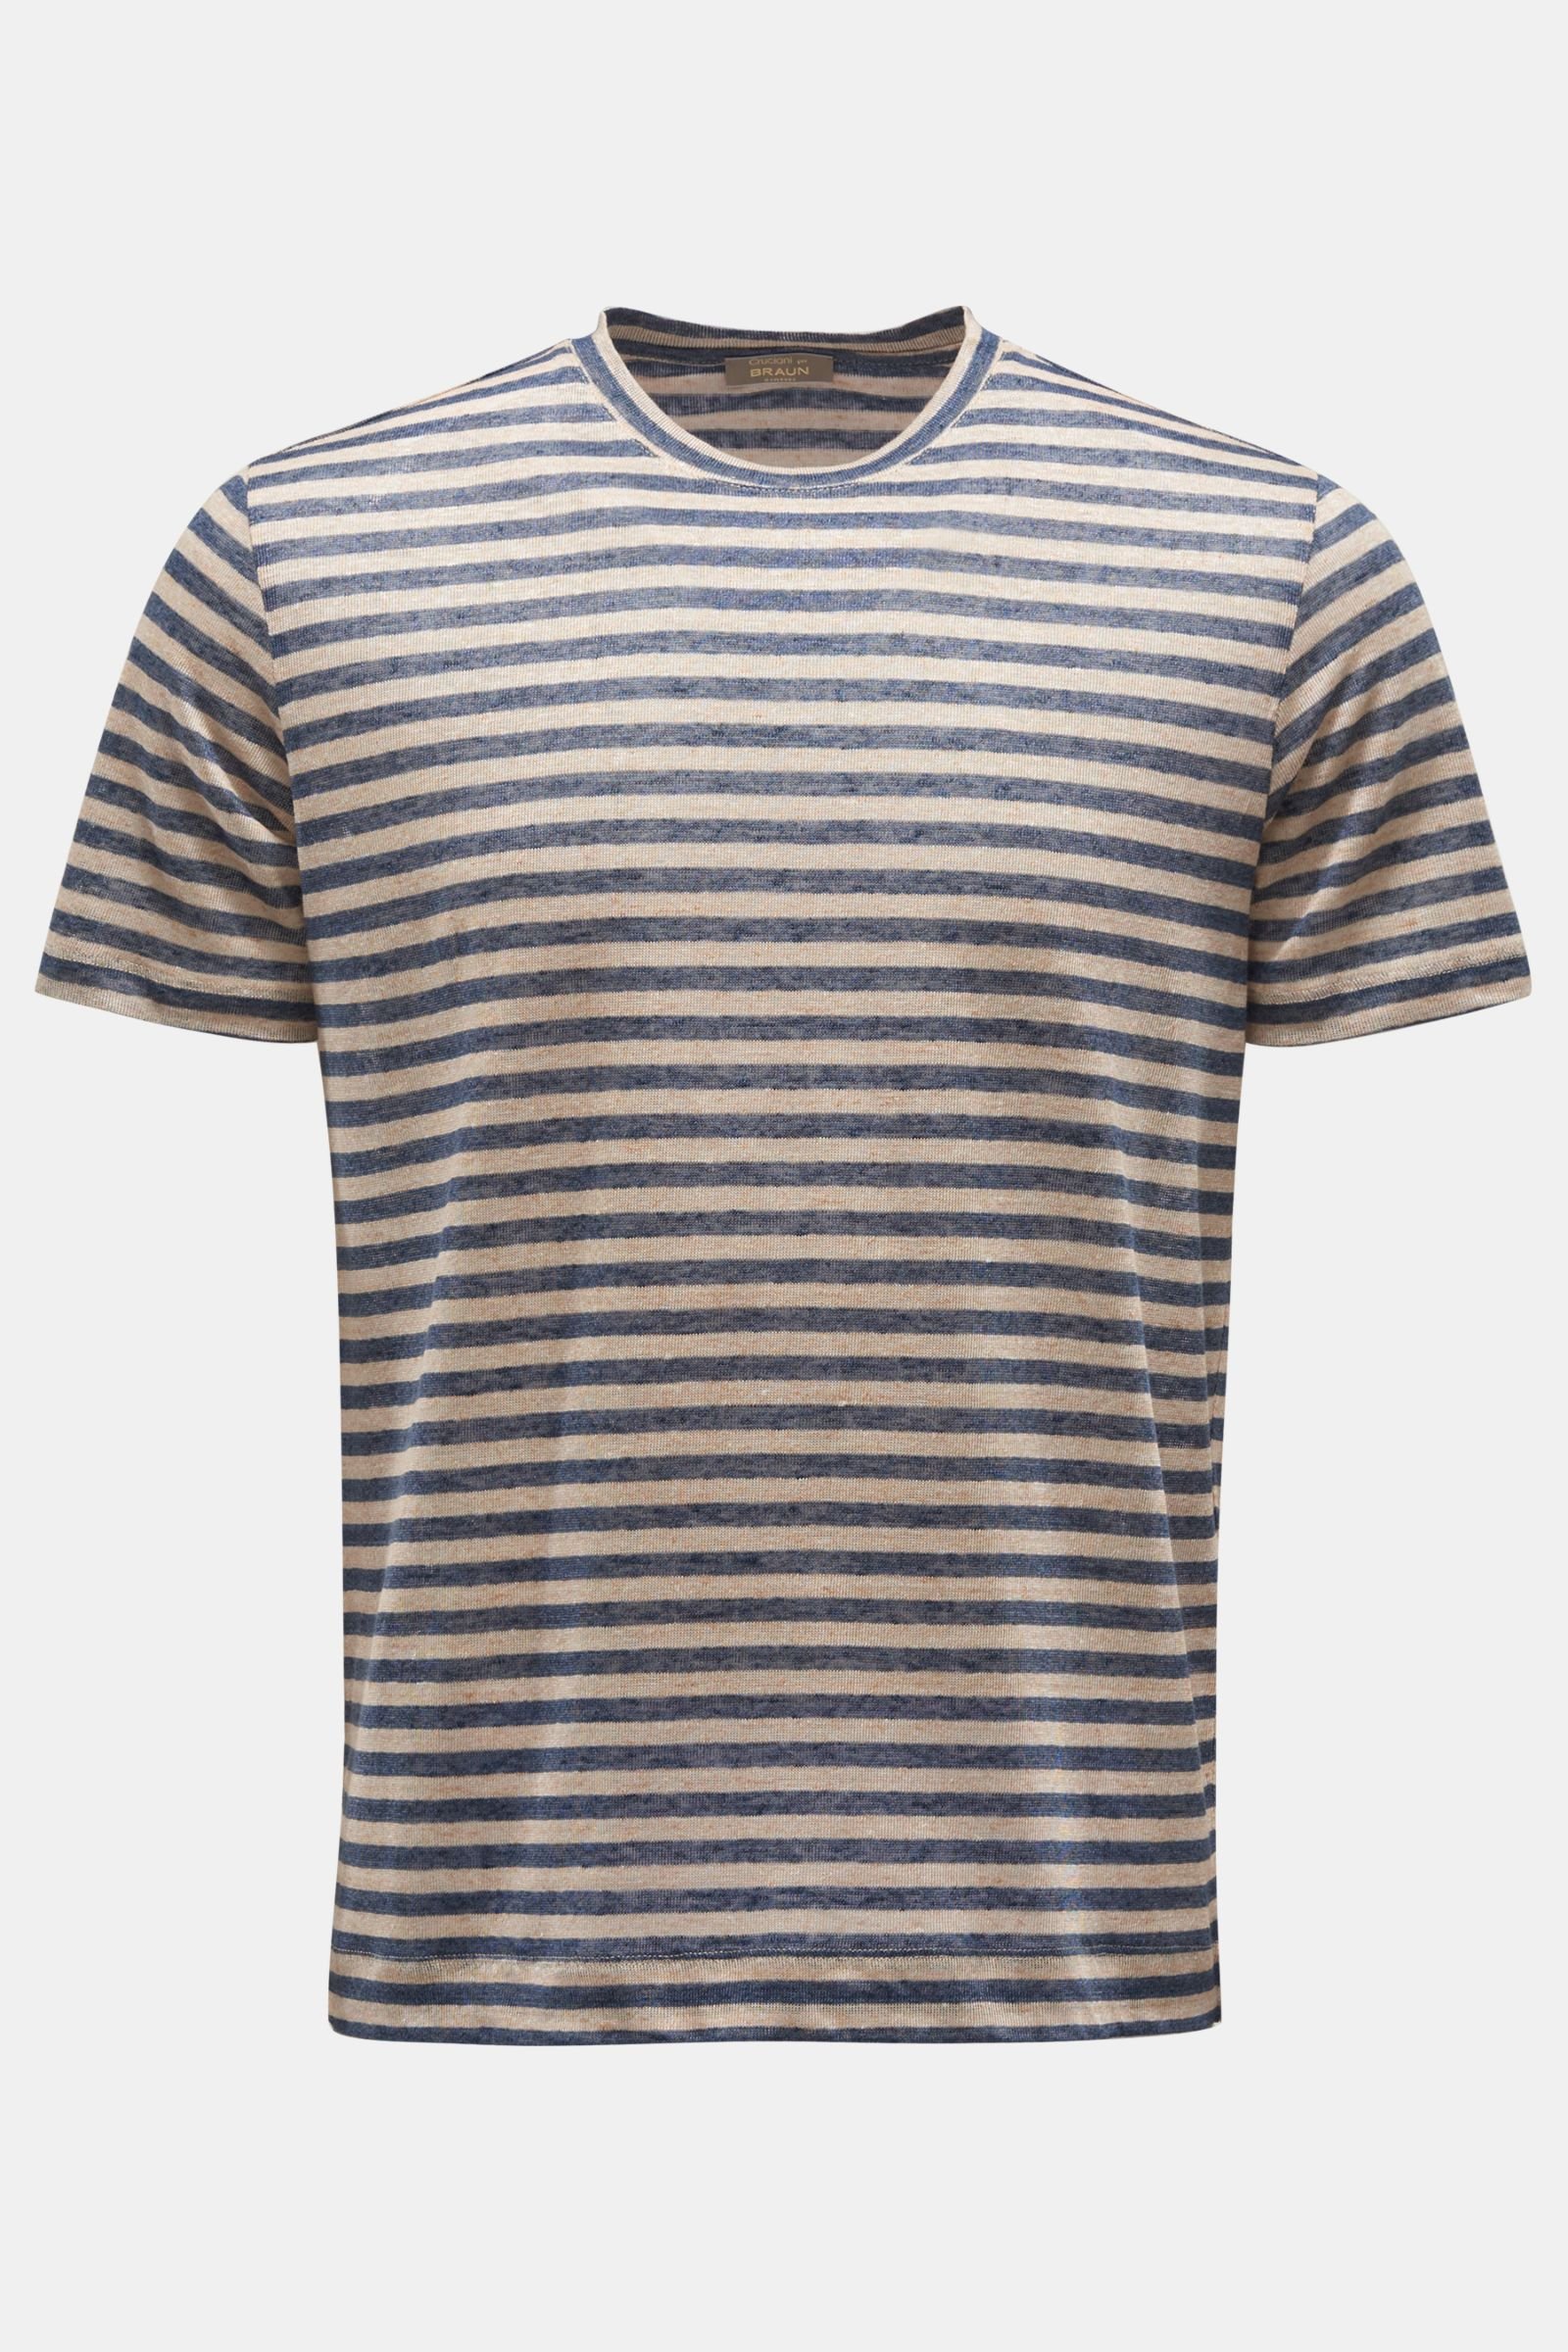 Linen crew neck T-shirt navy/light brown striped